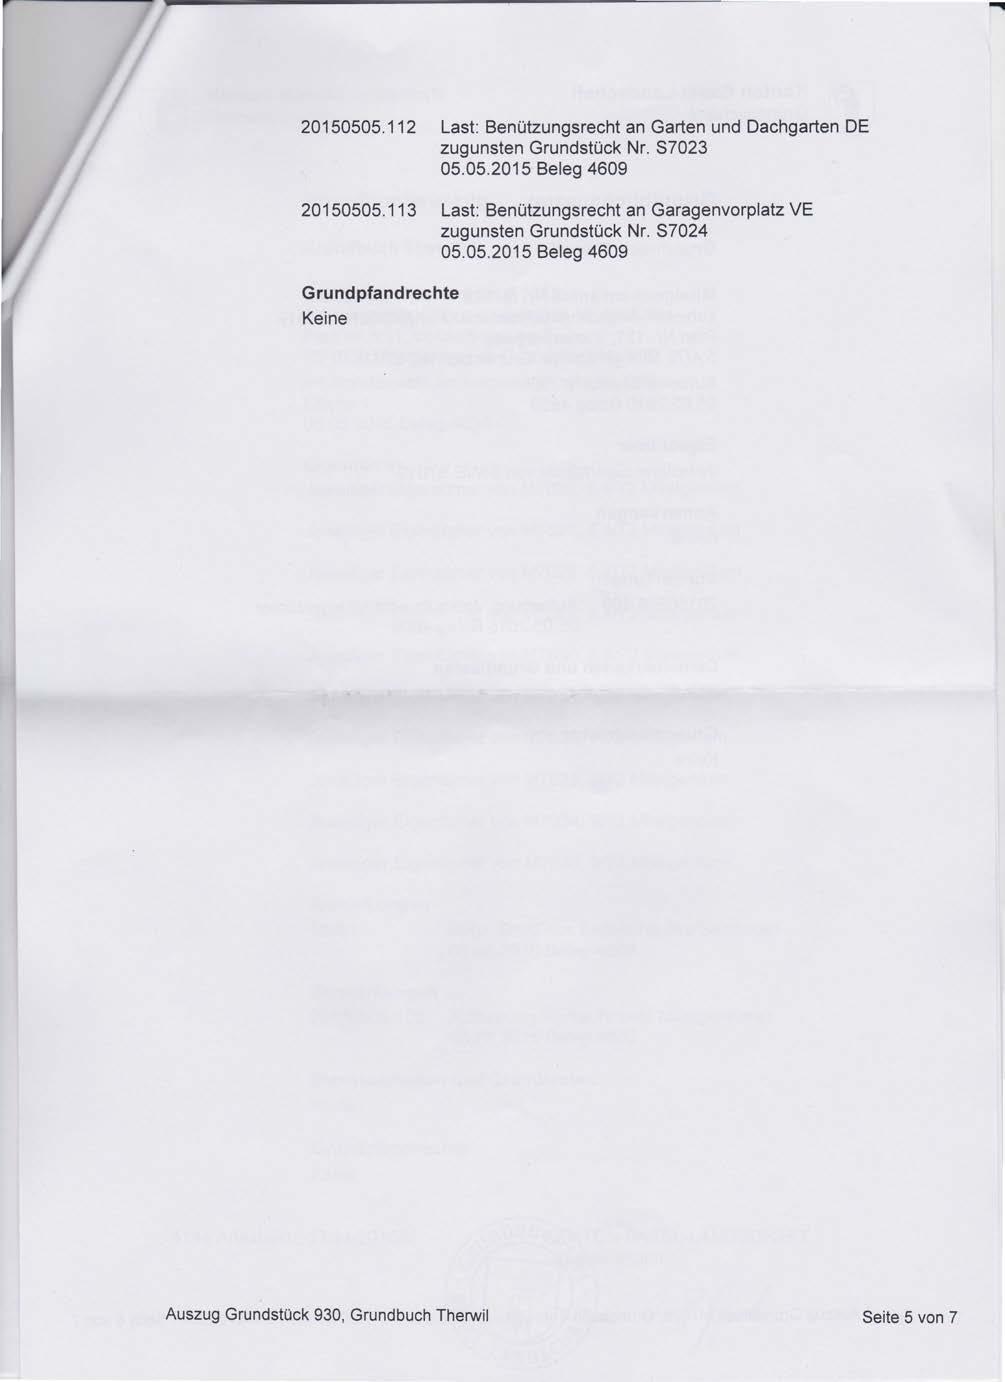 8102 Recht: Grenzbaurecht für Doppelgarage und Einstellhalle zulasten Grundstück Nr. 934 14.05.2013 Beleg 81310 20150505.